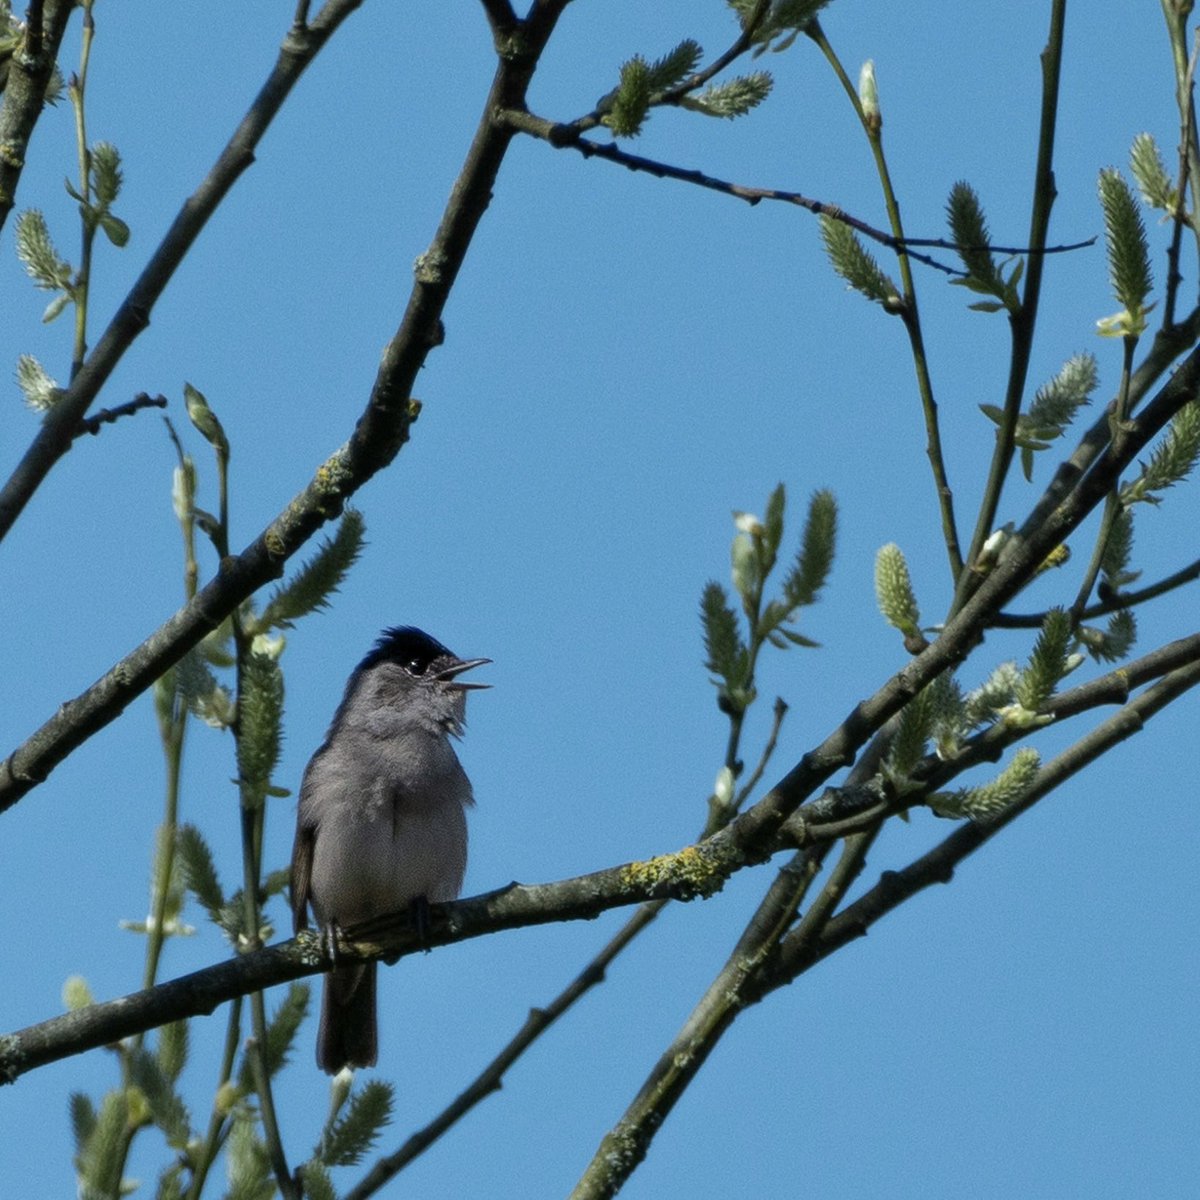 Blackcap singing in the sunshine ☀️ #birdlife #blackcap